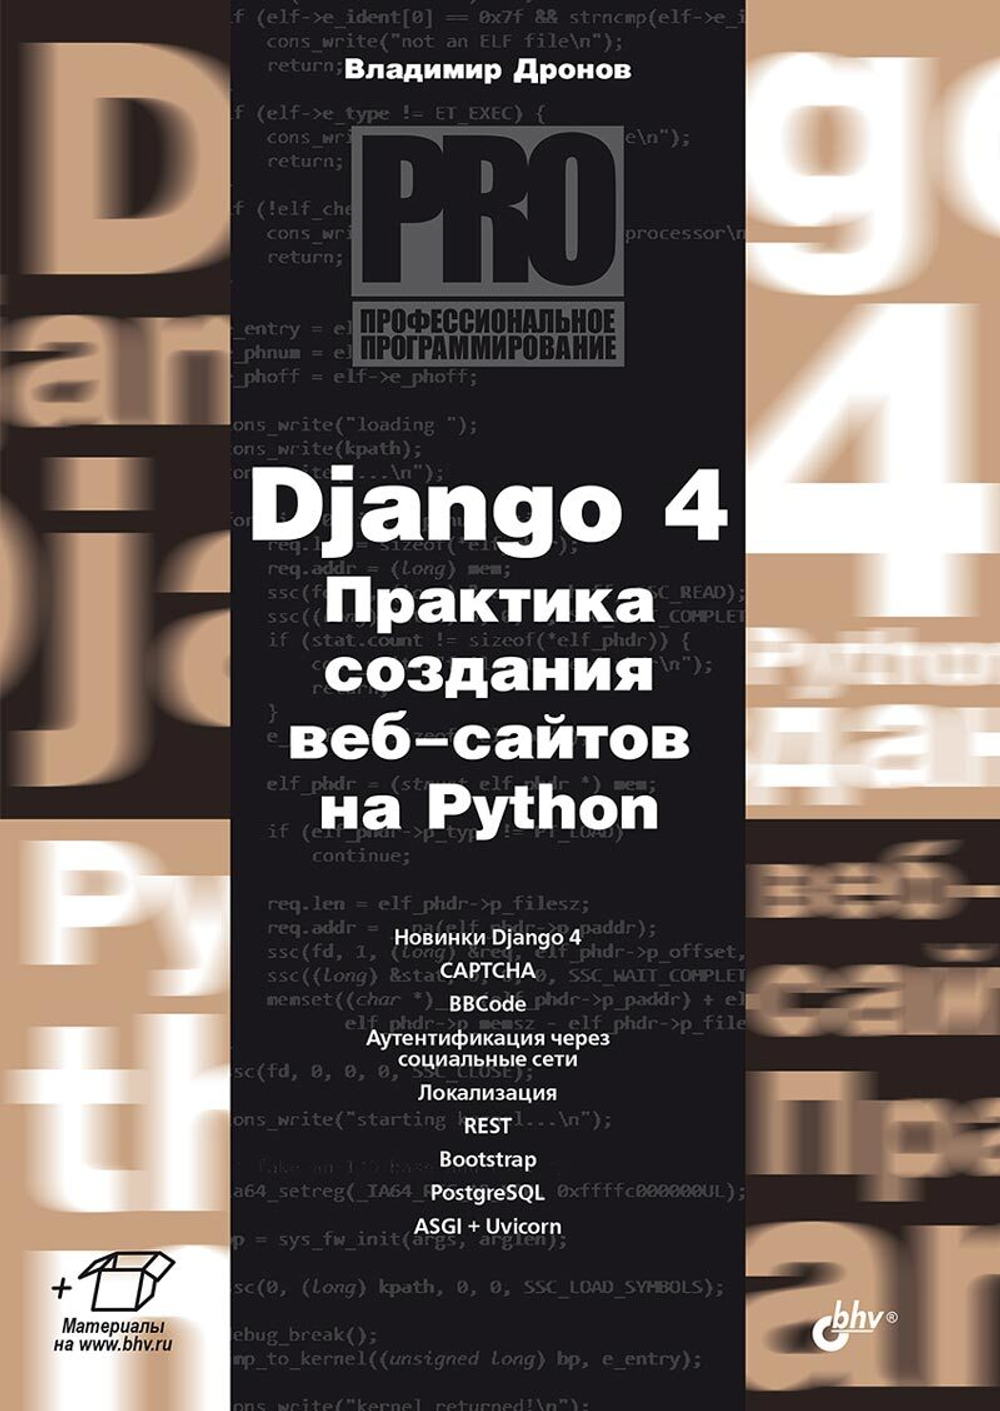 Книга: Дронов В.А. "Django 4. Практика создания веб-сайтов на Python"